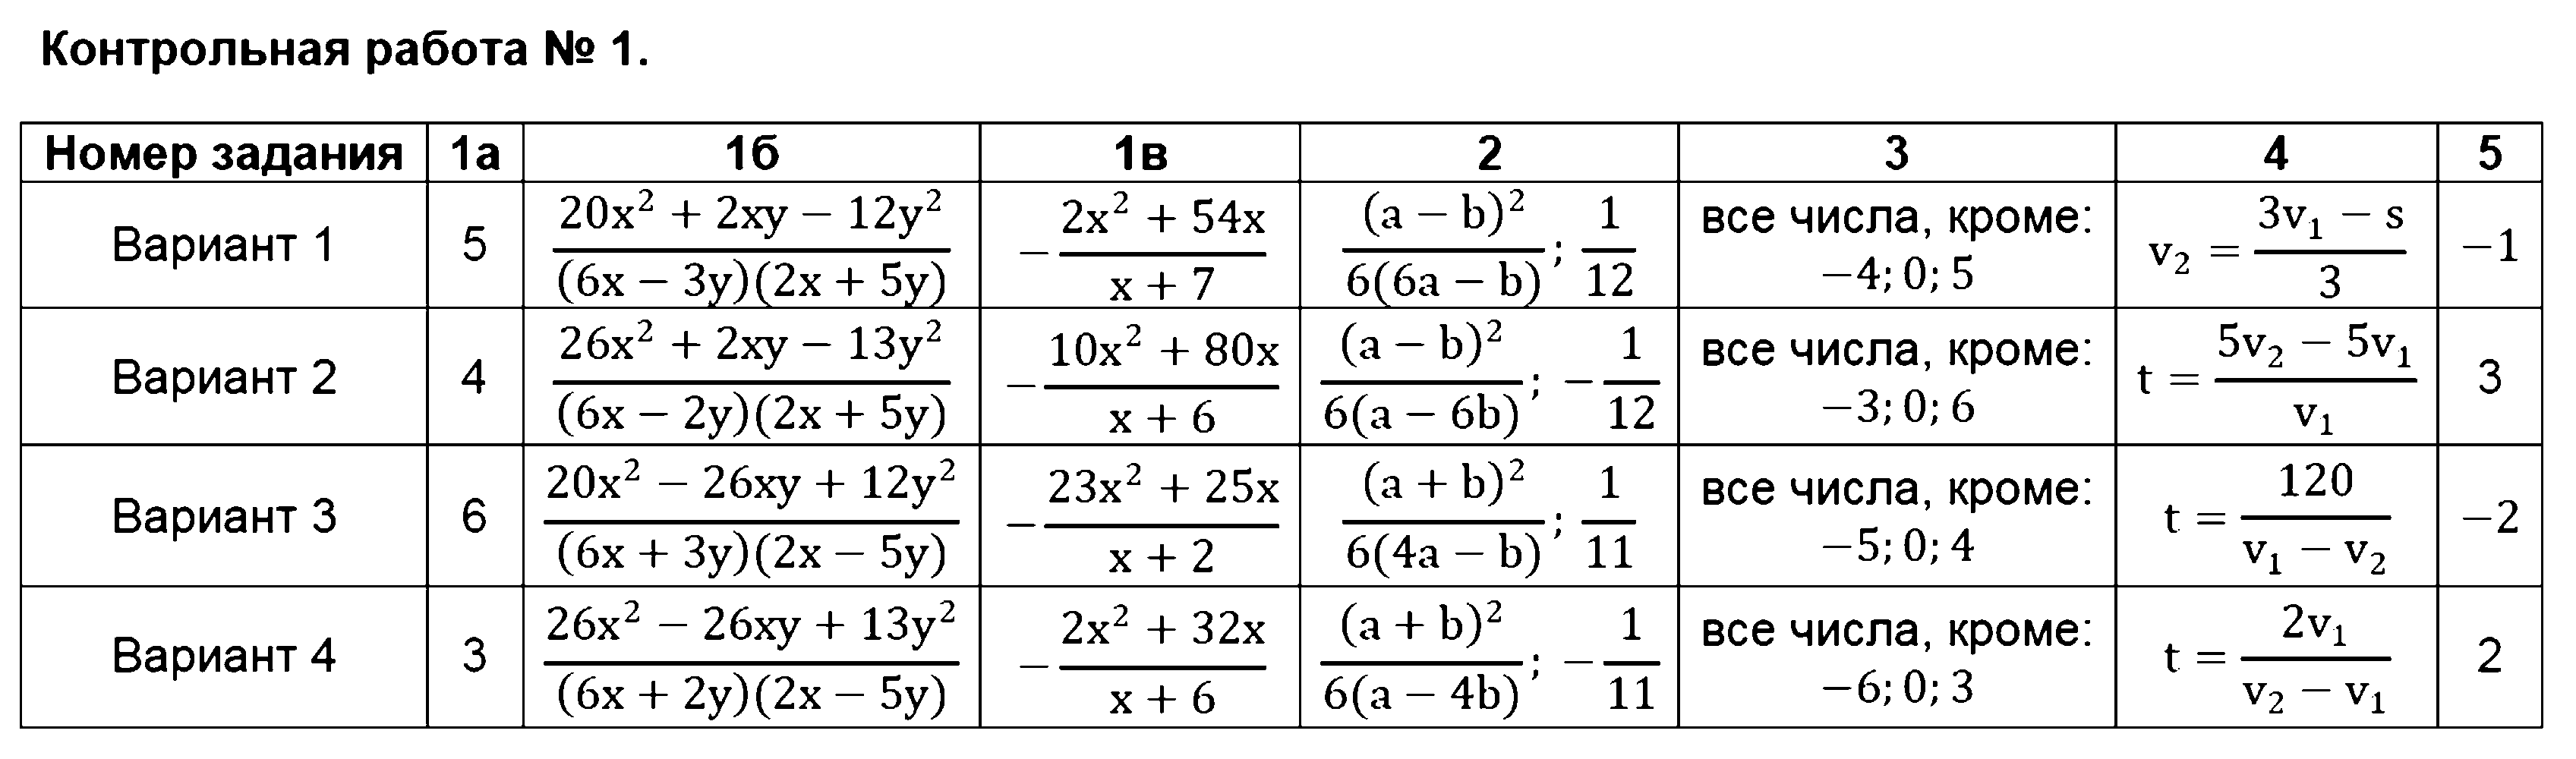 ГДЗ Алгебра 8 класс - Контрольная работа №1